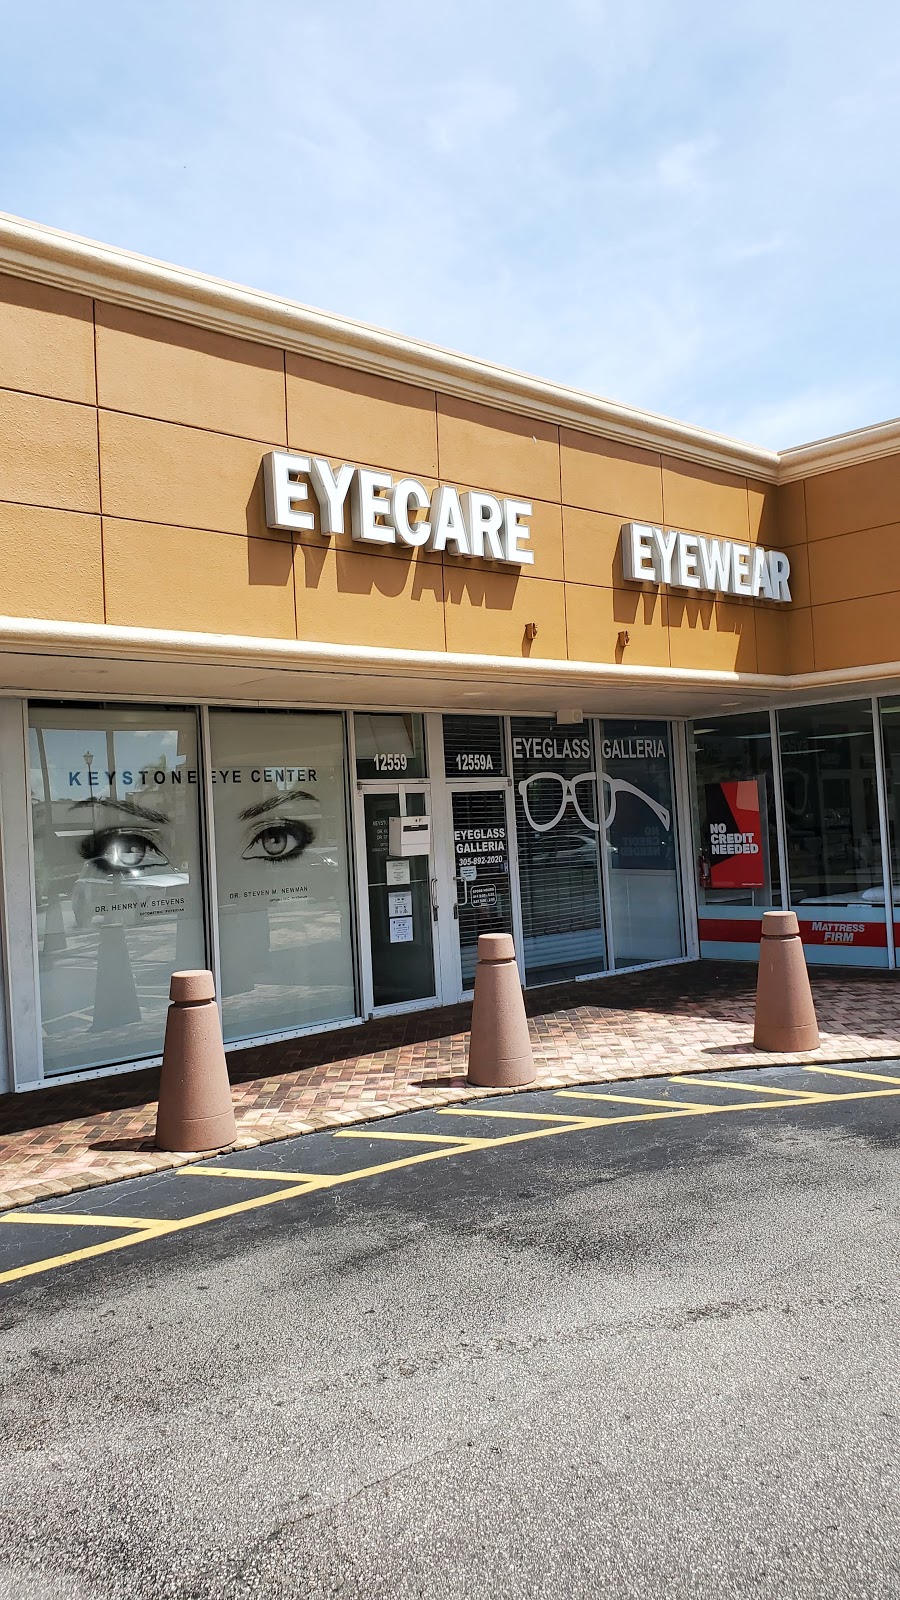 Eyeglass Galleria | 12559 Biscayne Blvd # A, North Miami, FL 33181, USA | Phone: (305) 892-2020